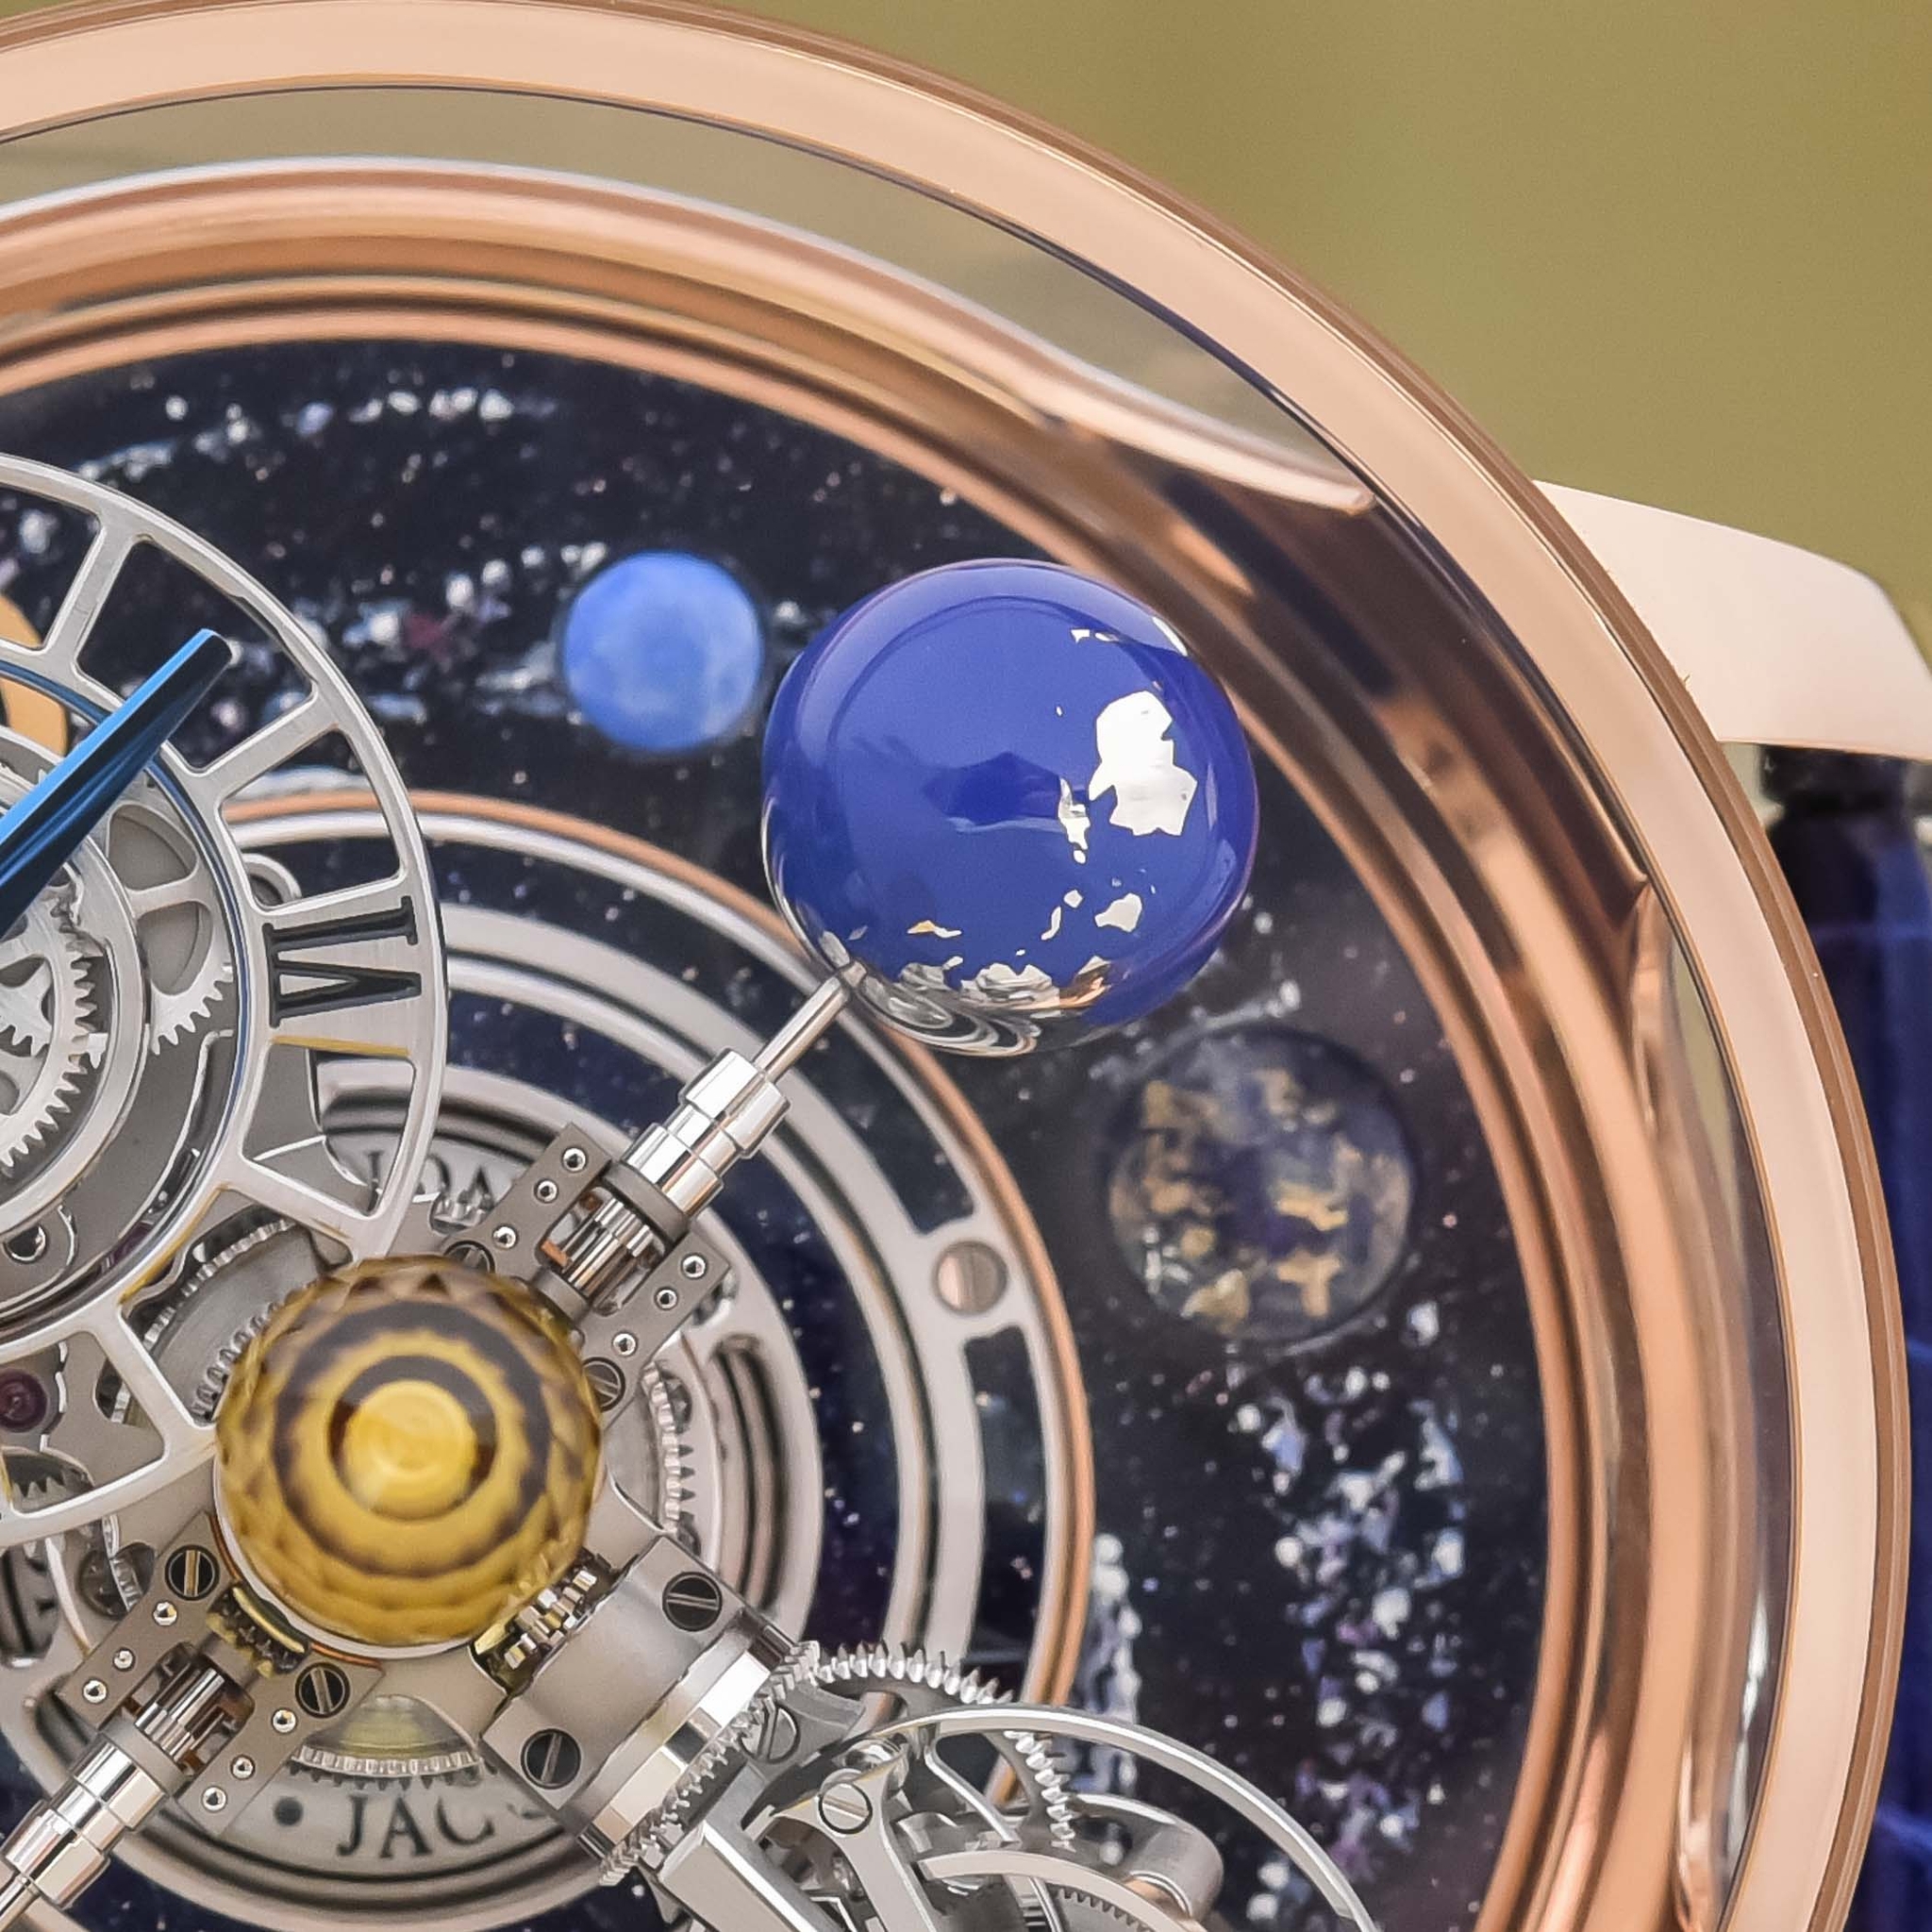 Đồng hồ Jacob & Co. Astronomia Tourbillon Typhoon: Tốc độ có phải điểm duy nhất?